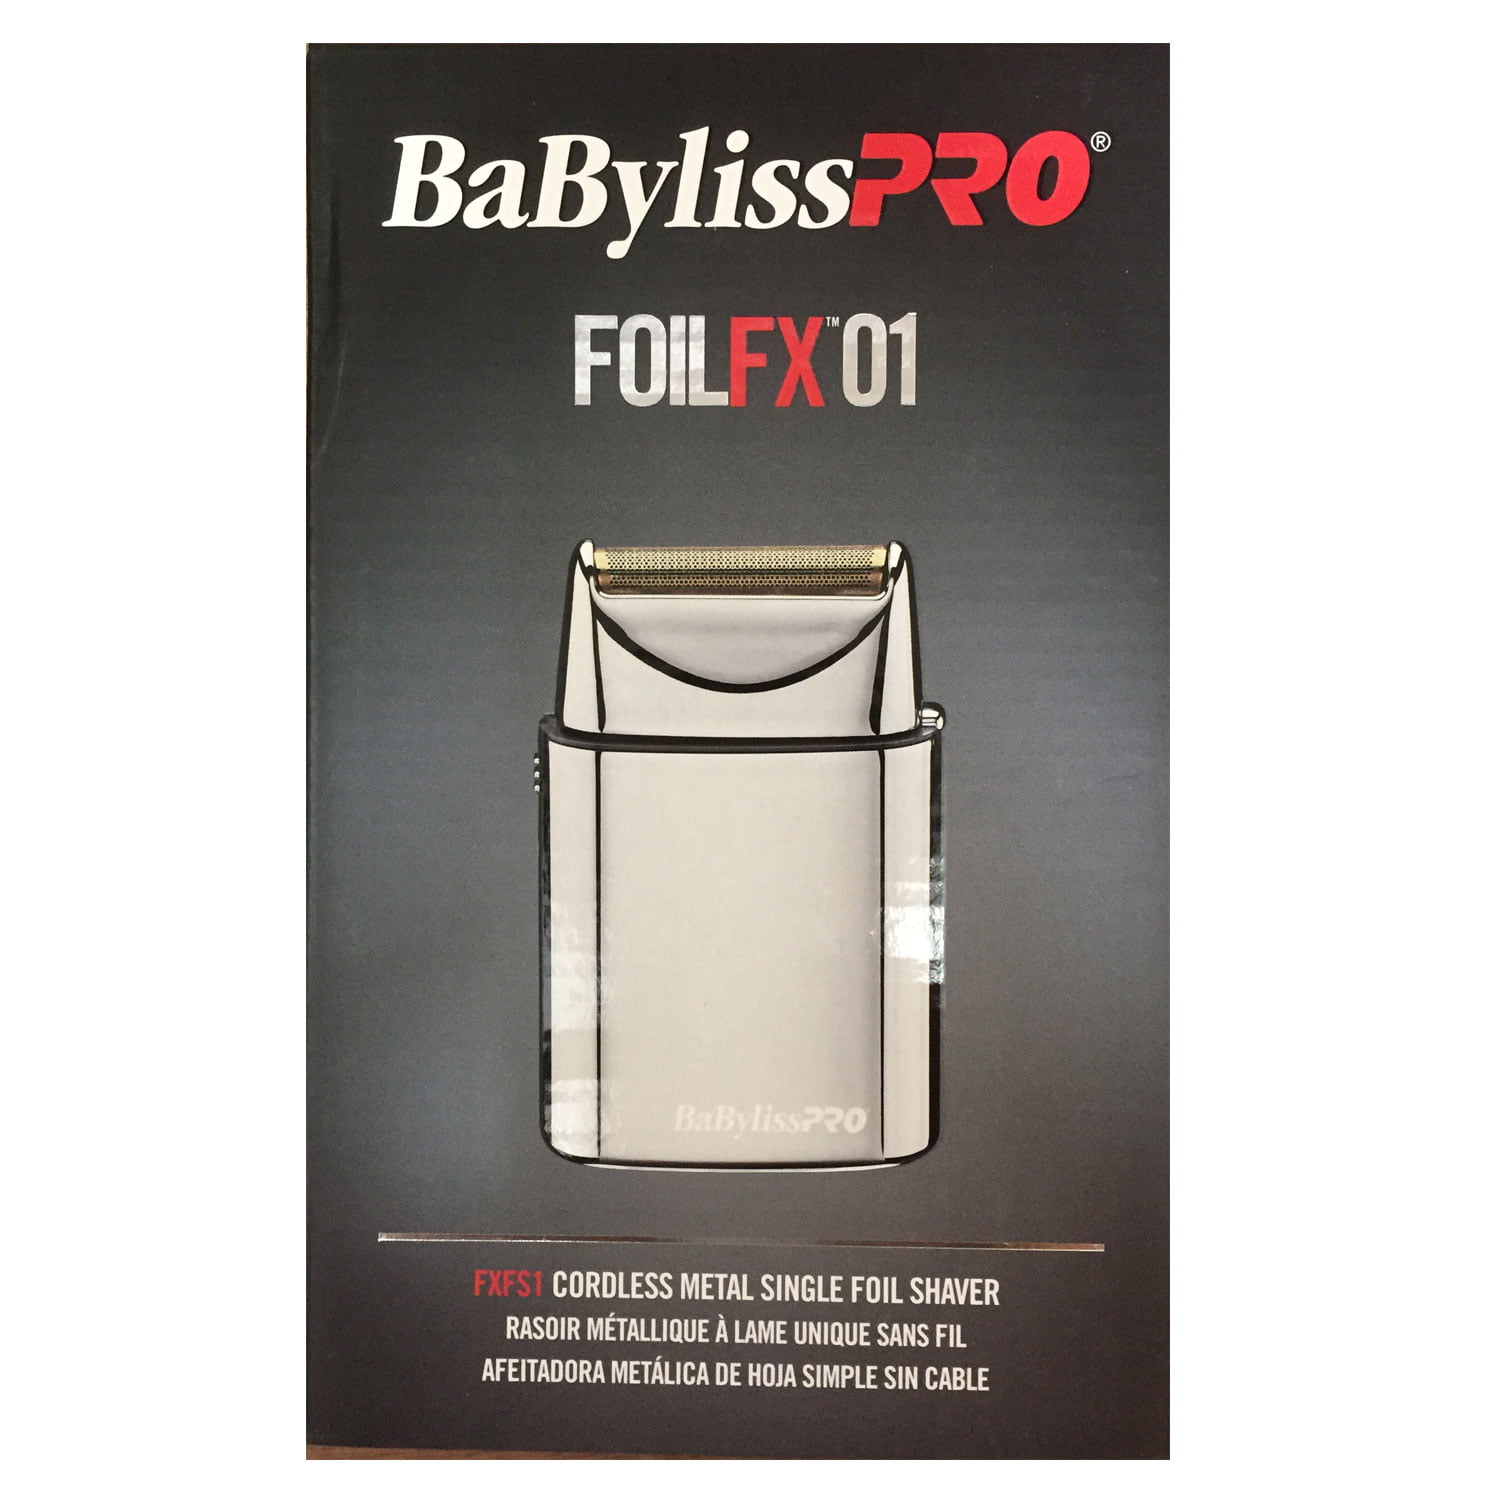 babyliss pro foil fx 02 review